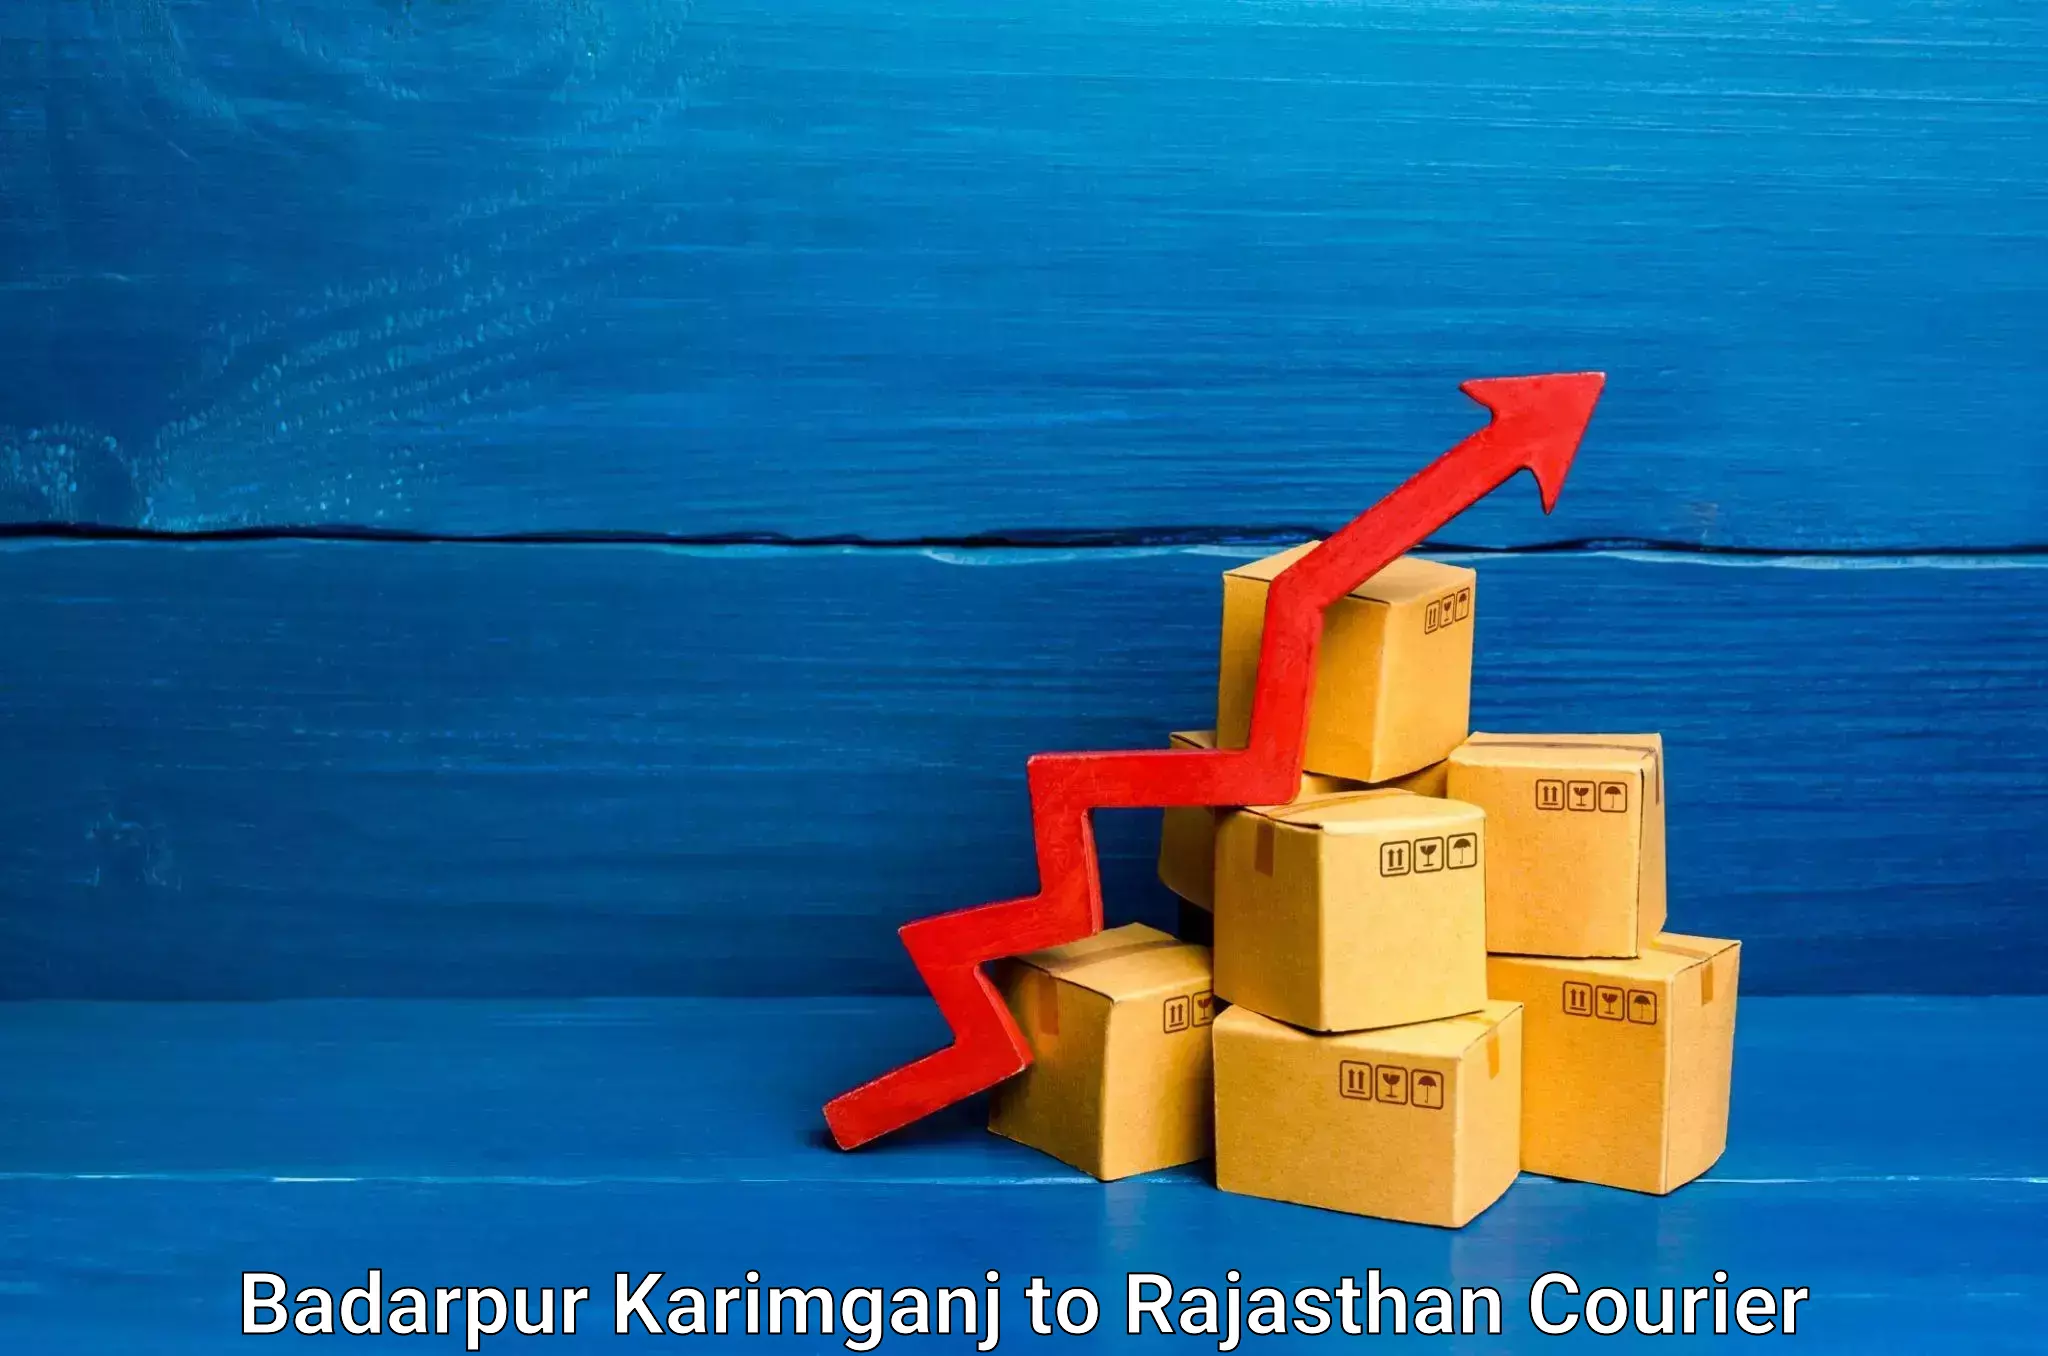 Tech-enabled shipping Badarpur Karimganj to Yathalakunta